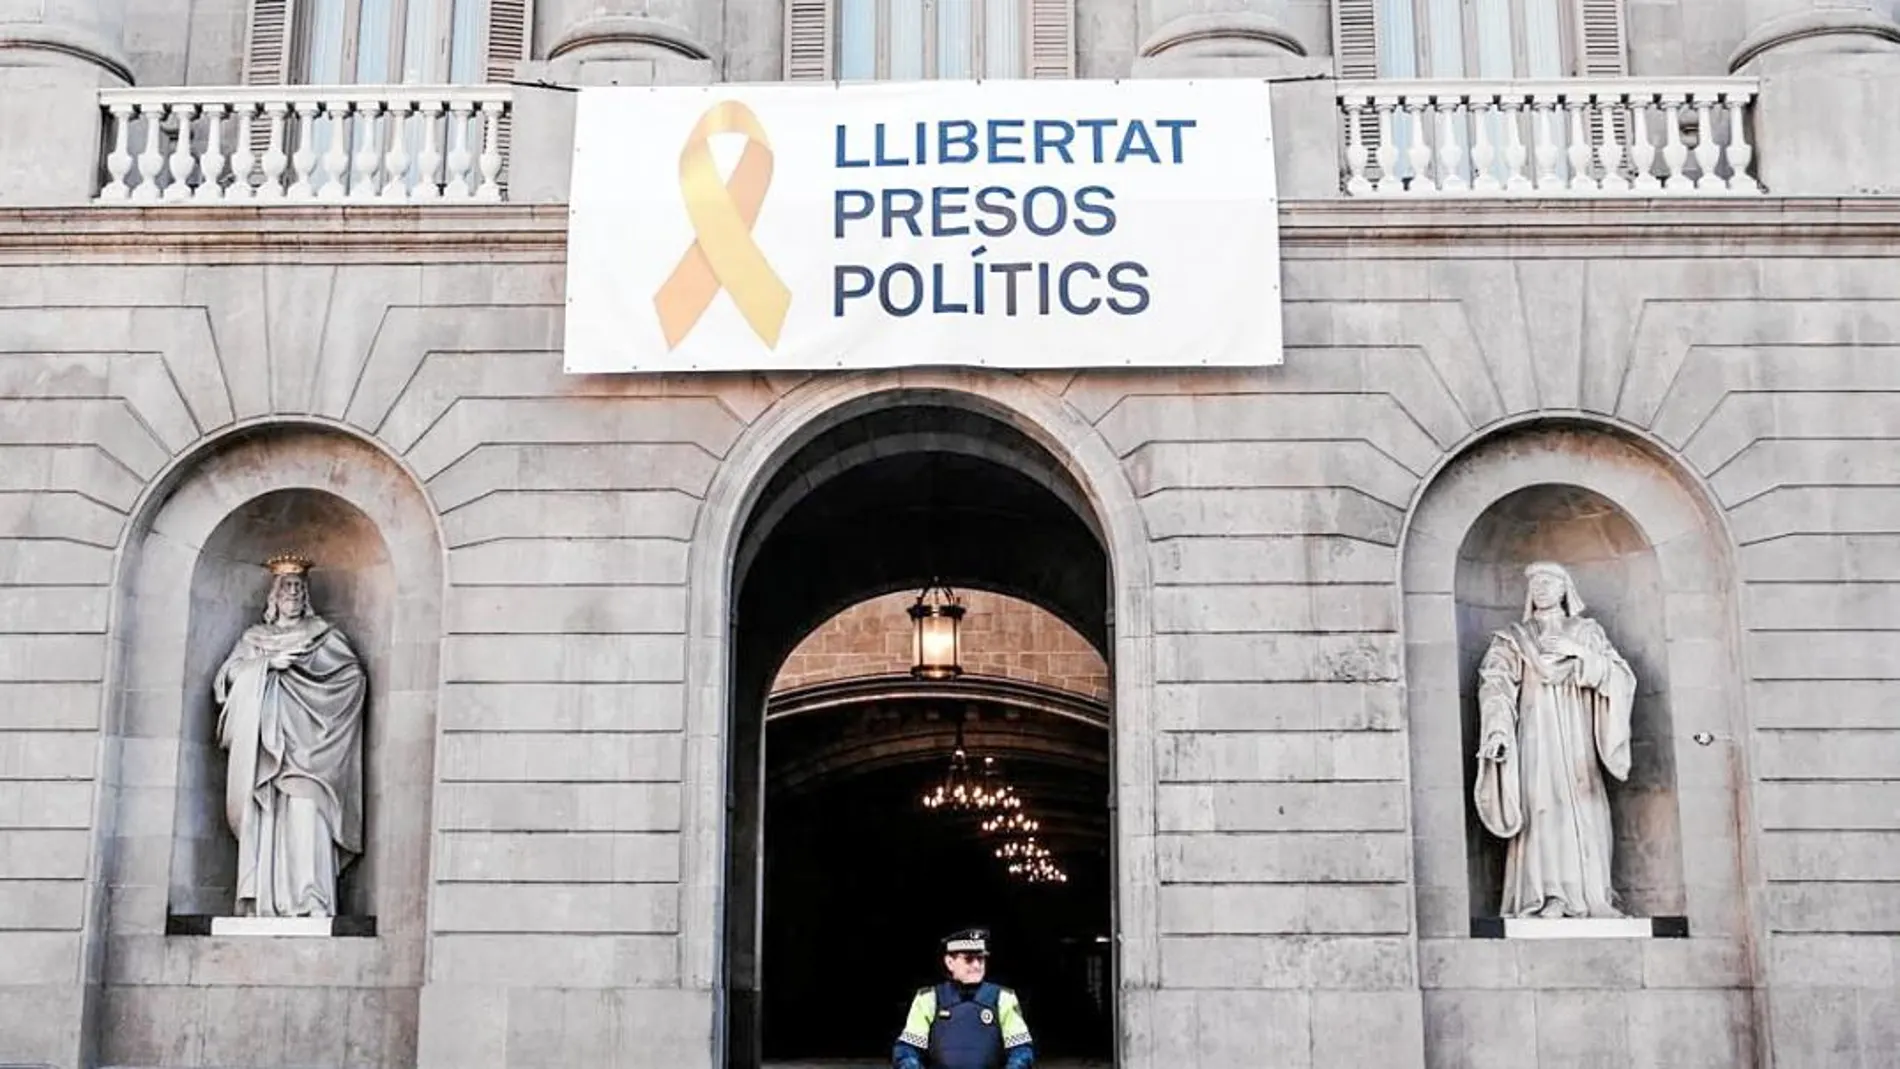 El Ayuntamiento de Barcelona fue obligado a retirar los lazos amarillos en apoyo a los «presos políticos»